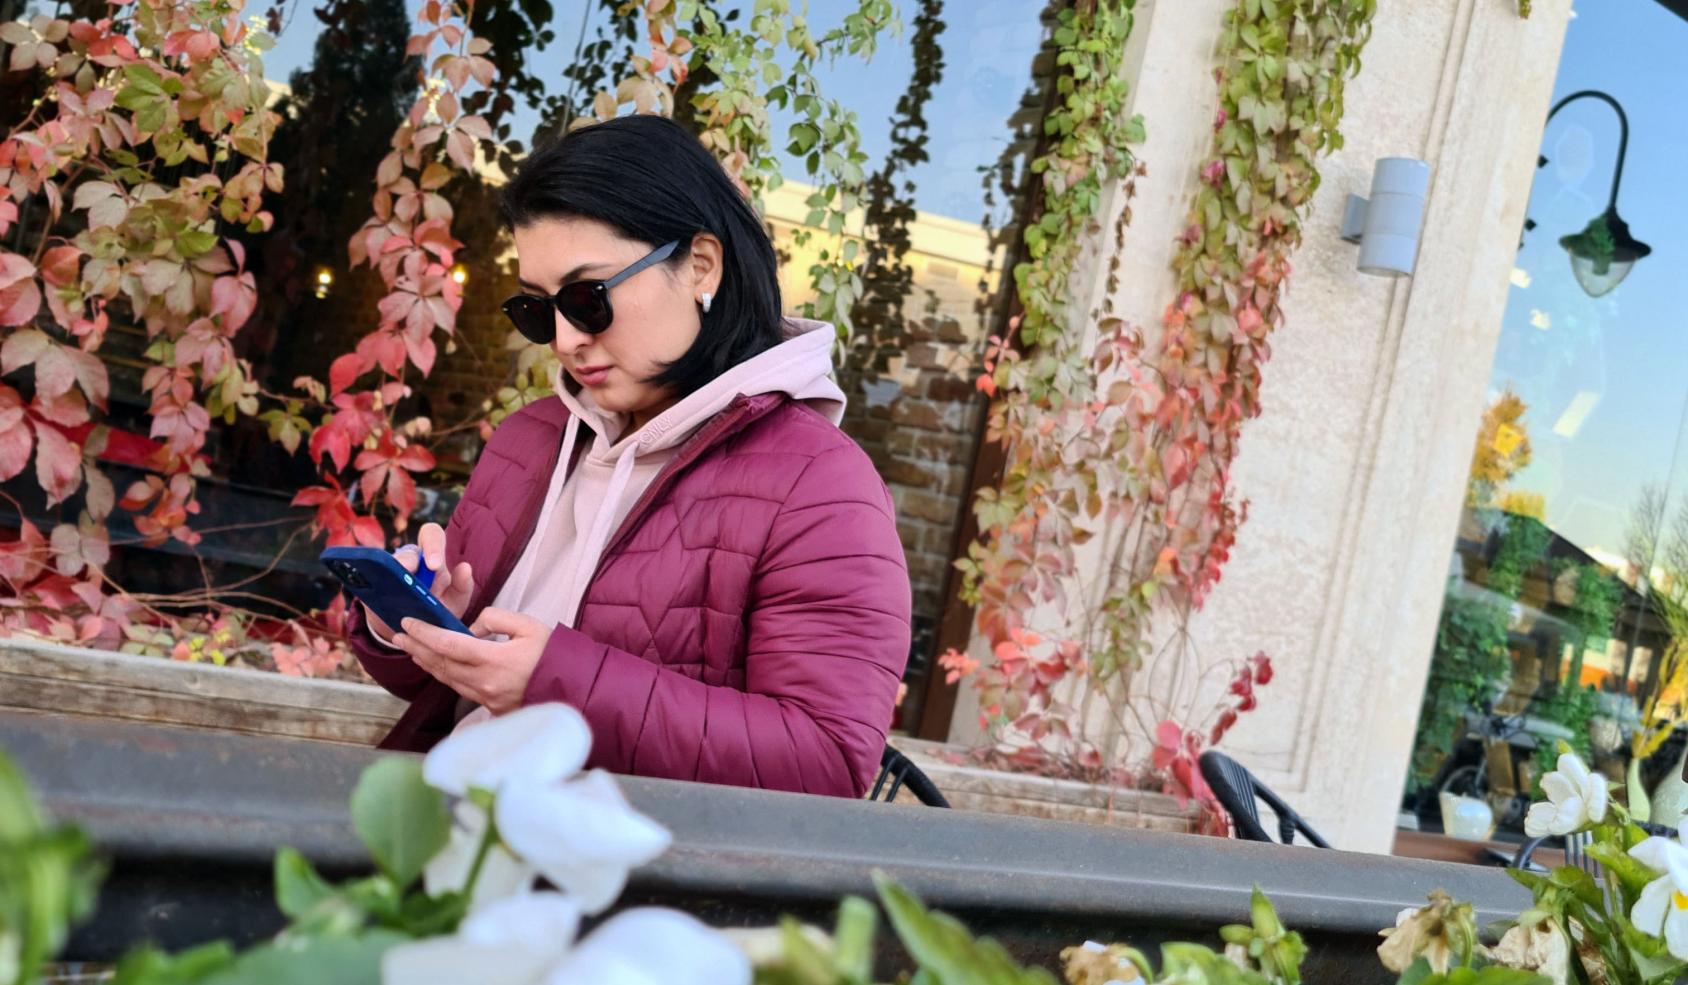 Aqida Mokhirova está de pie leyendo mensajes en su teléfono móvil mientras está fuera de la ventana, de un negocio local, cubierta de enredaderas con flores rosadas.